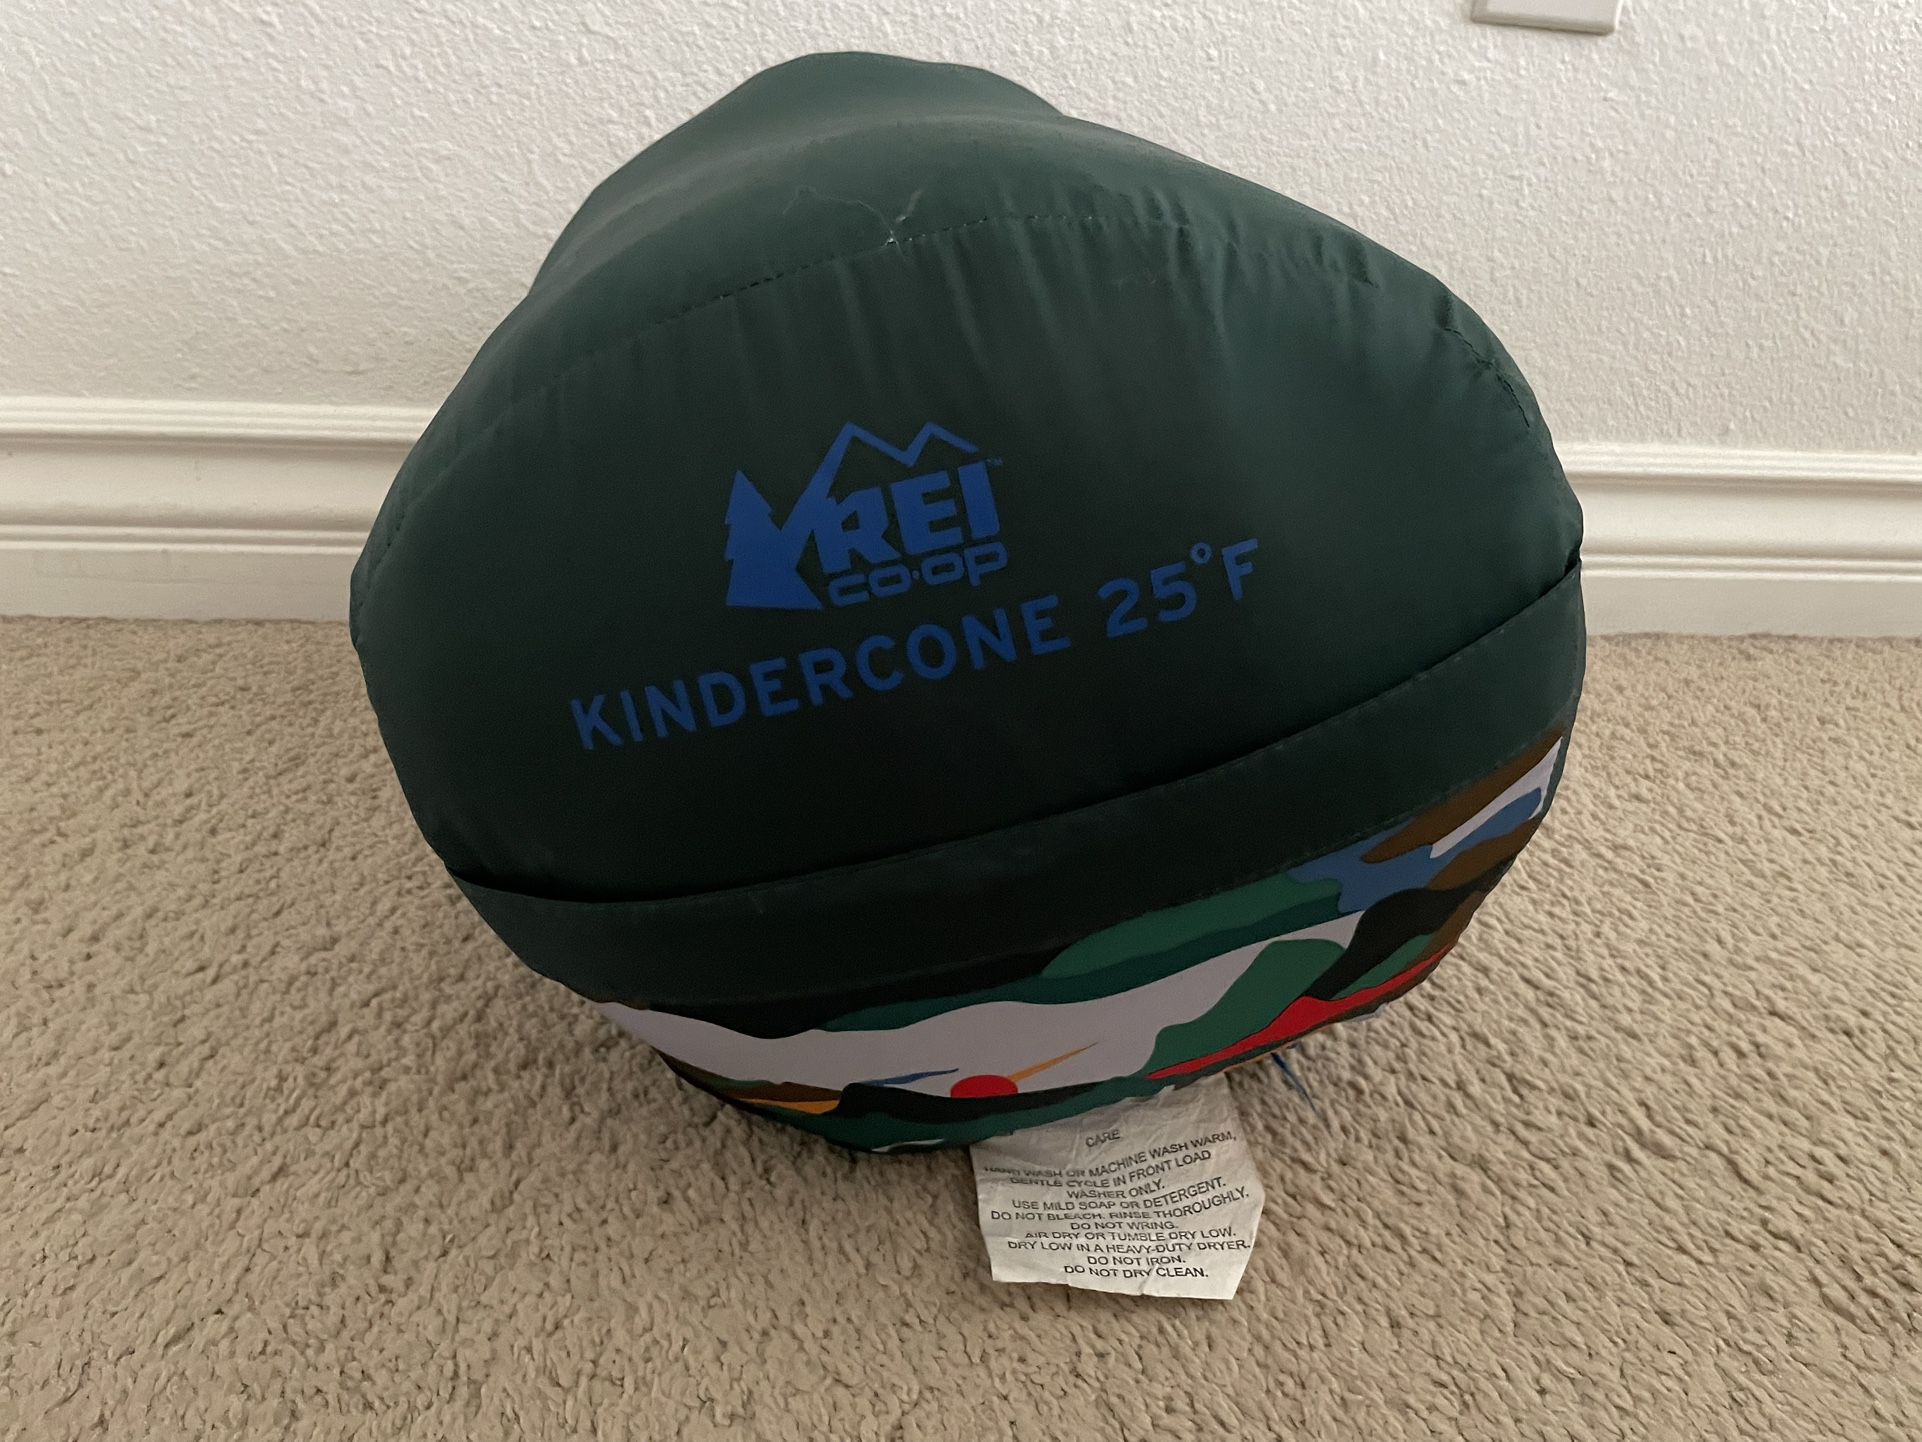 REI Kindercone 25 kids sleeping bag